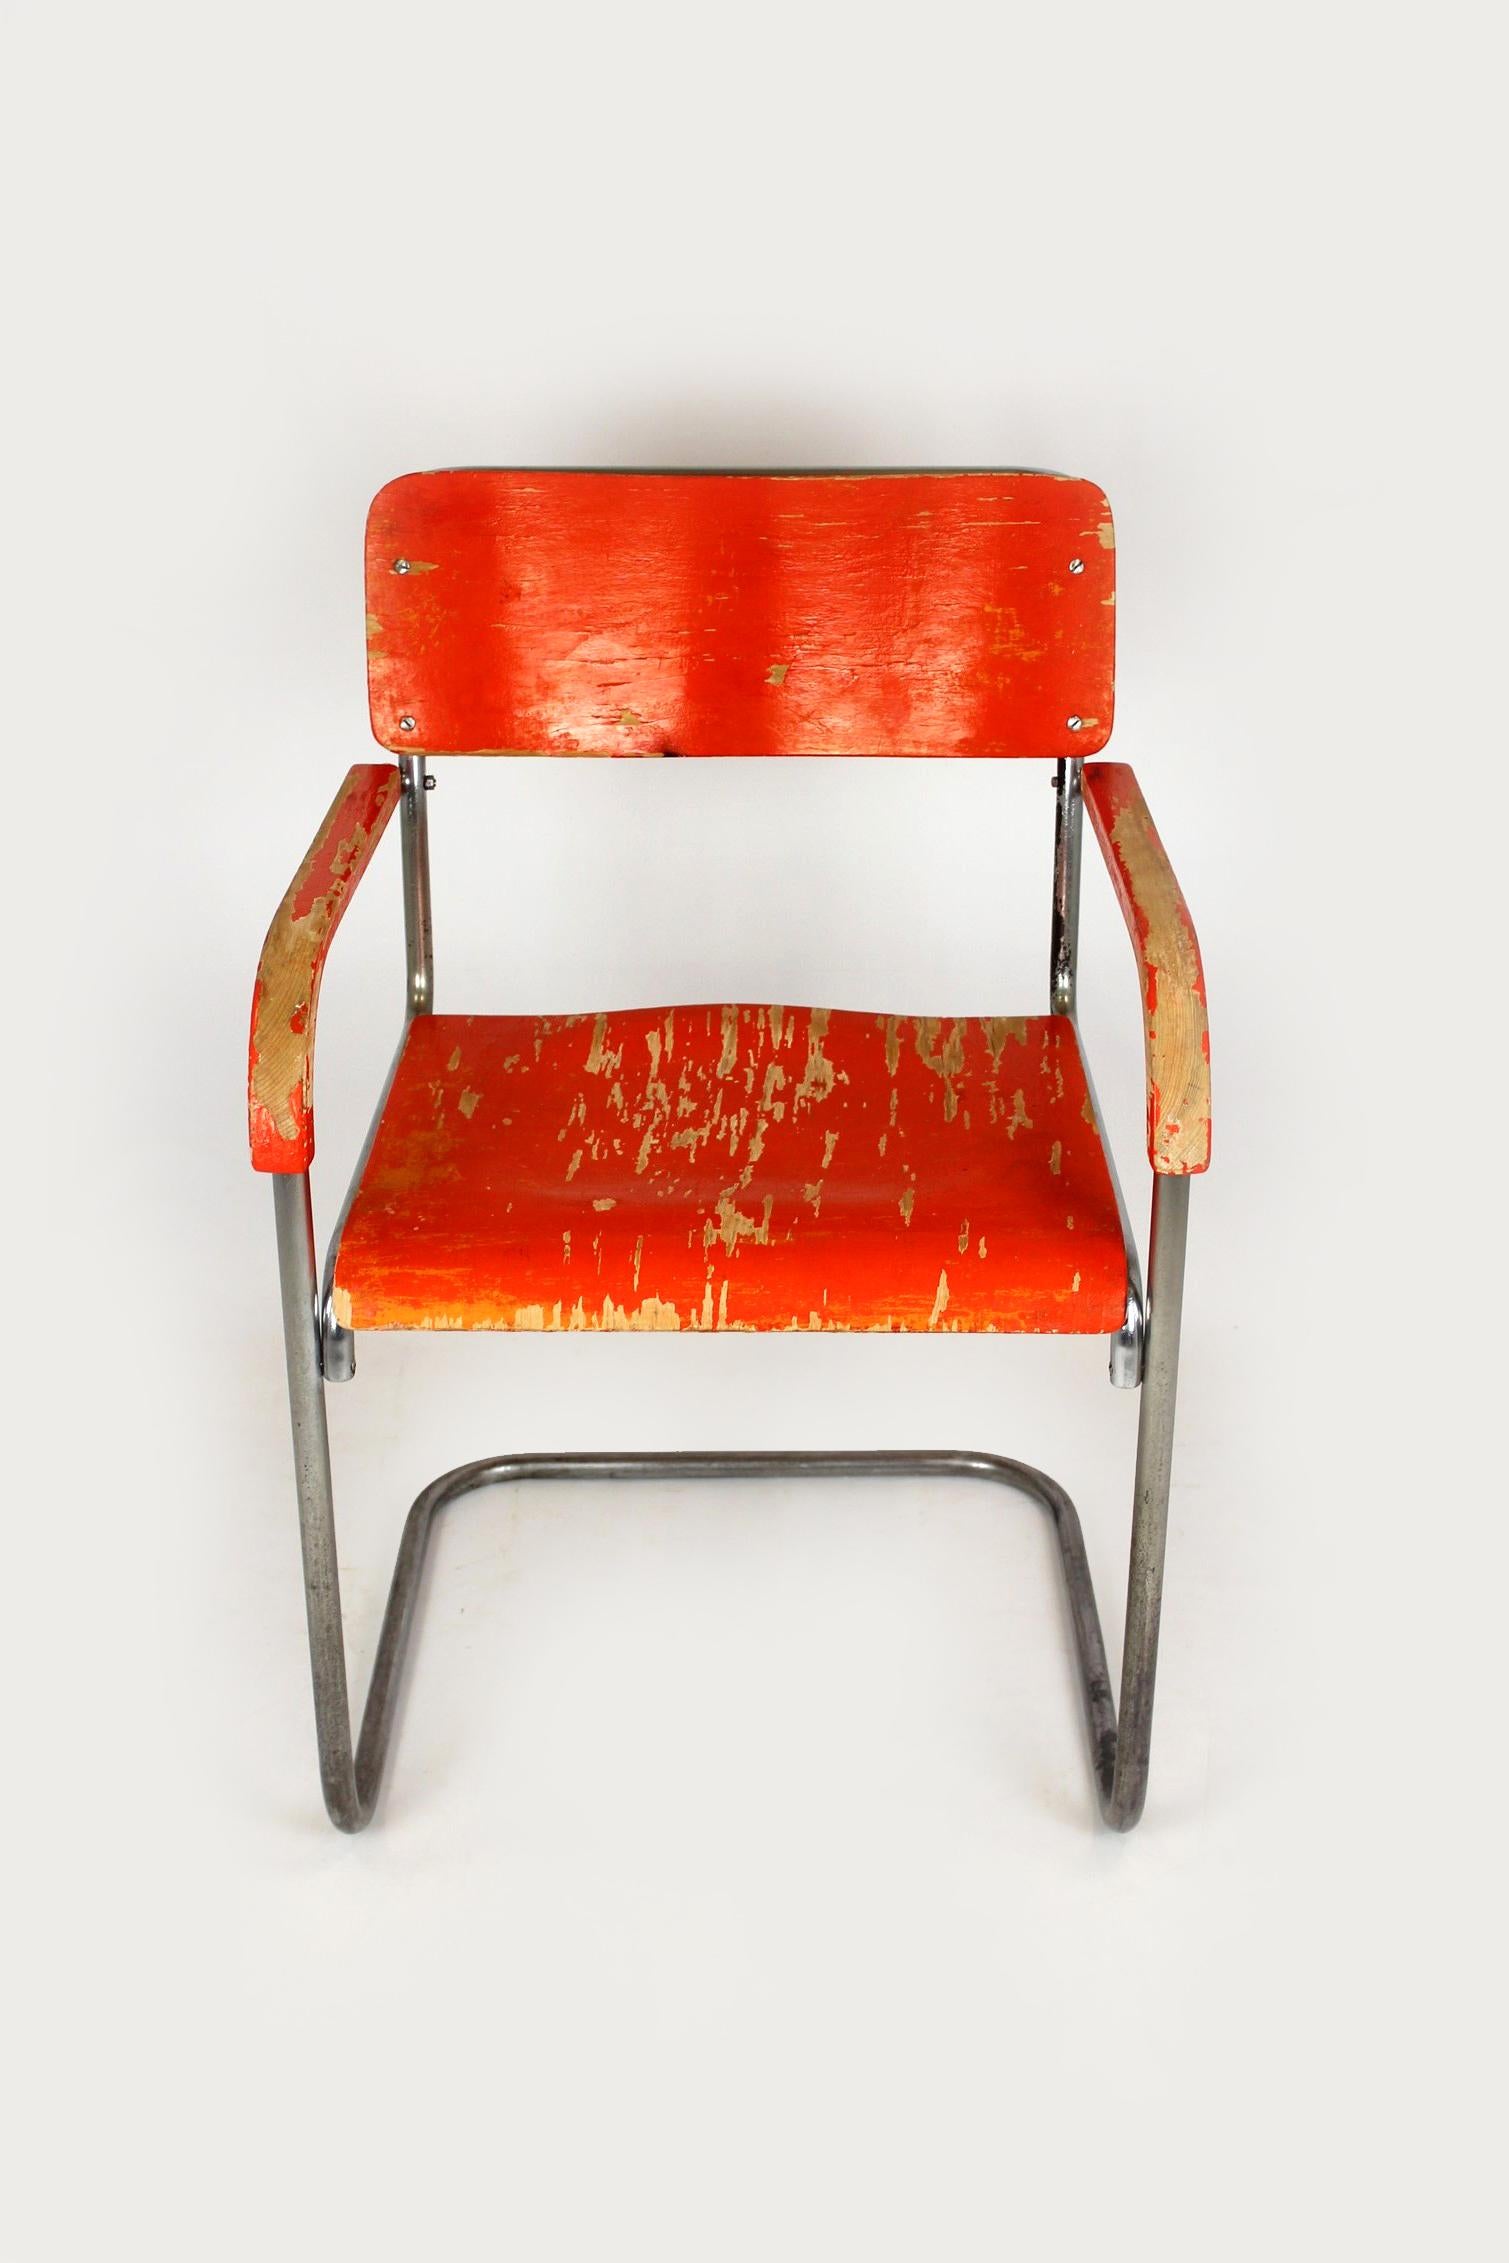 
Cette chaise en acier tubulaire, de type B34, a été conçue en 1928 par Marcel Breuer. Il s'agit d'une version précoce et rare avec une assise et un dossier en contreplaqué, probablement fabriquée au début des années 1930. La chaise est en état